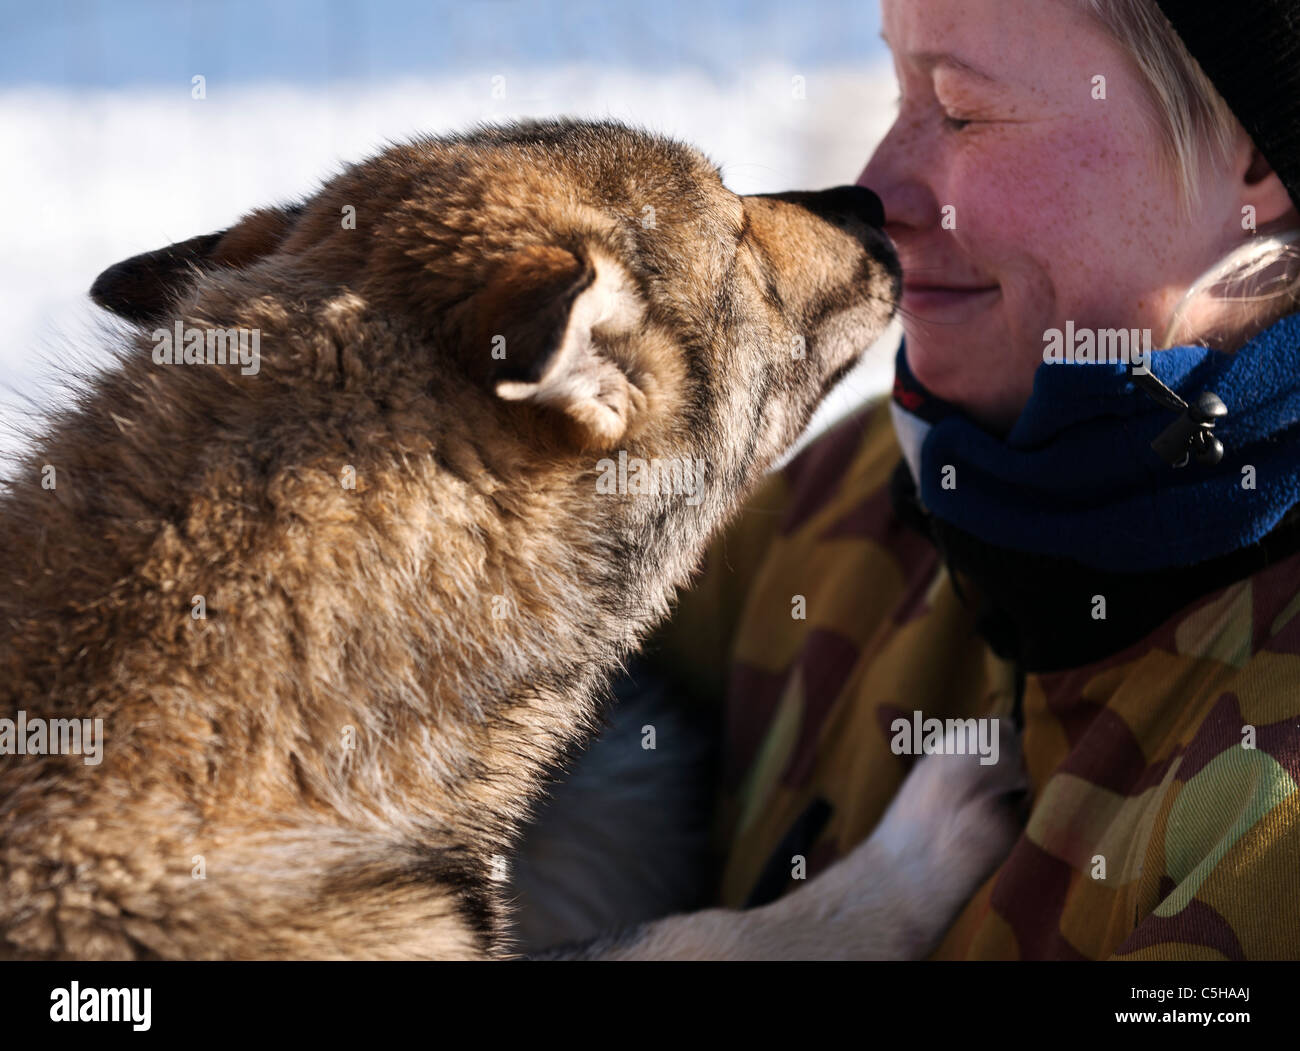 Chargeur avec un chiot Husky, Laponie, Finlande Banque D'Images